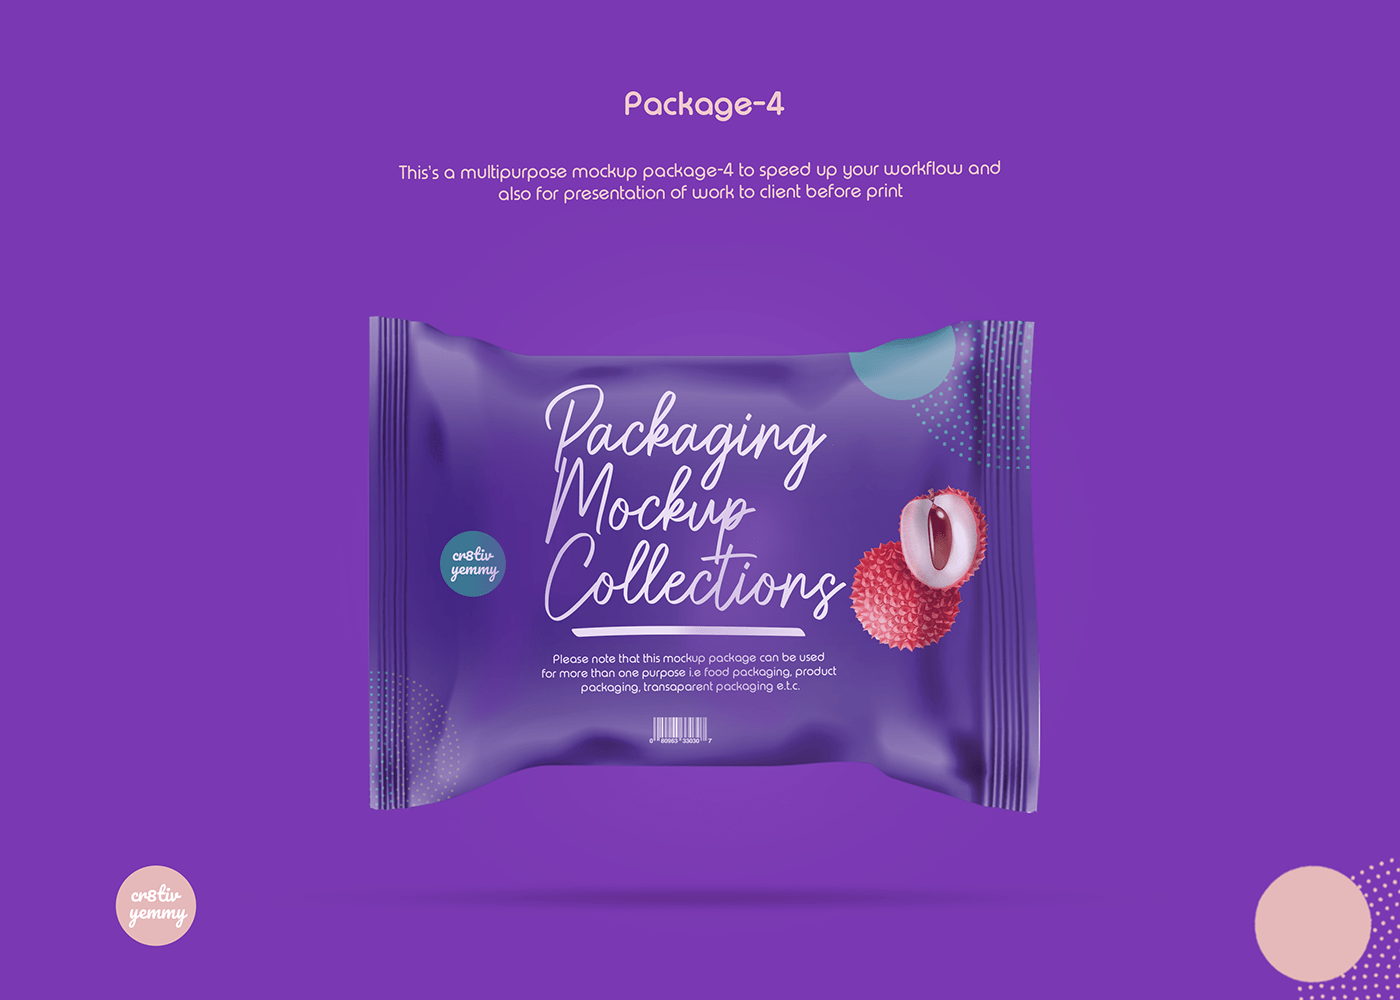 mockups photoshop resources packaging mockup Freebies PSD food packaging mockups PSD Freebies free download design community